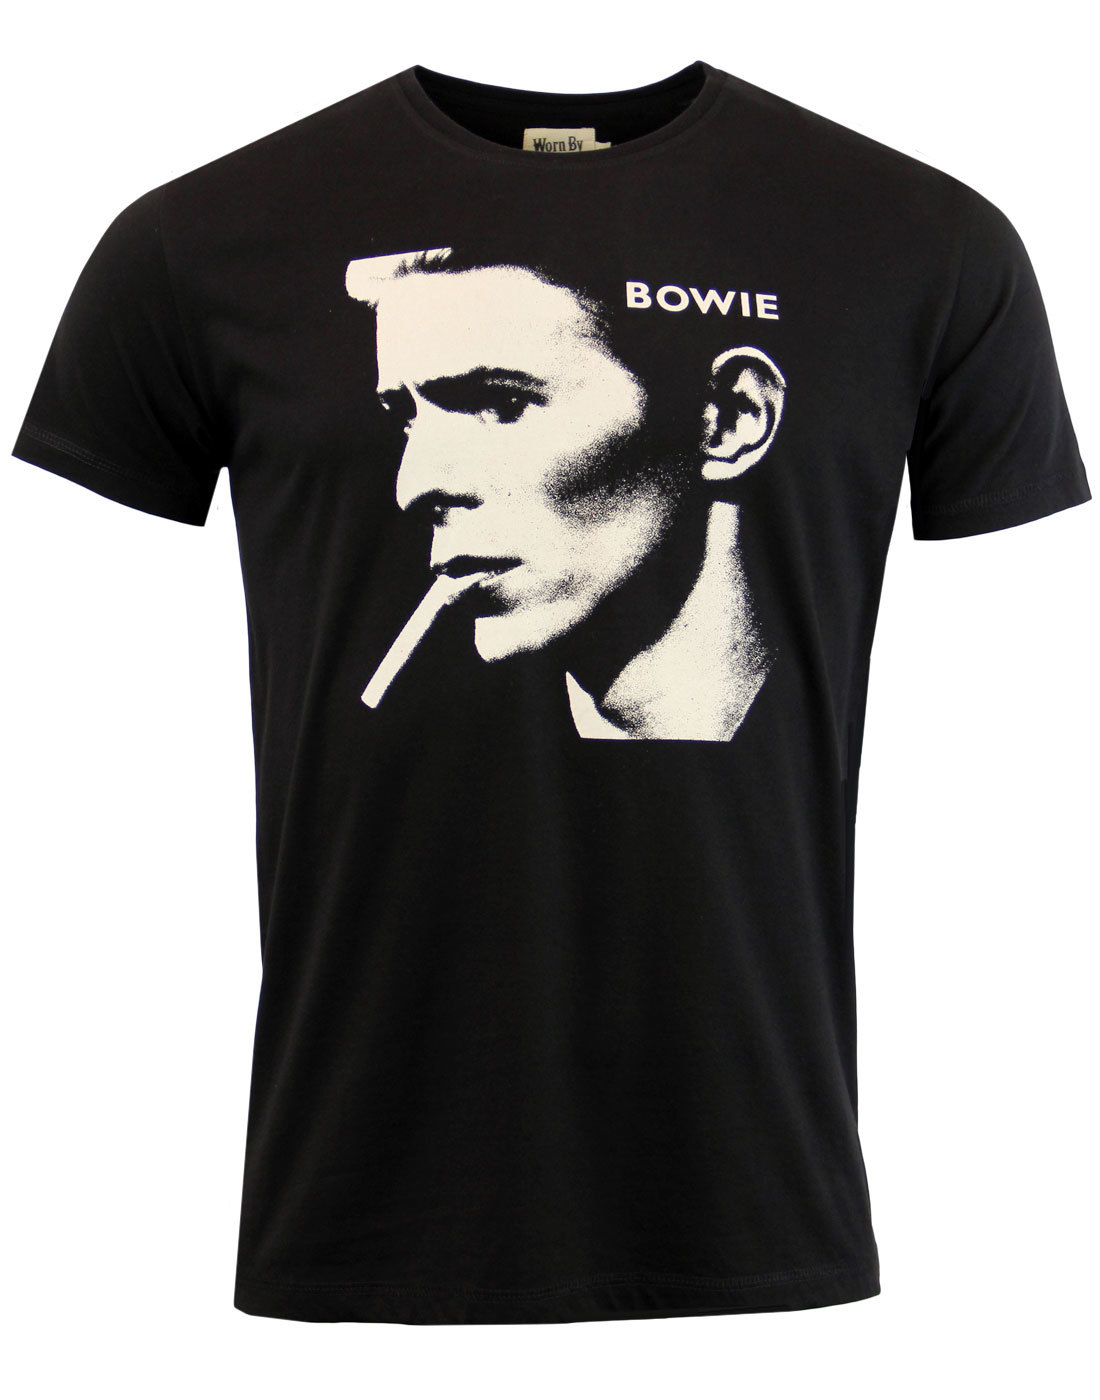 WORN BY David Bowie Bowie Retro 1970s Indie Photo T-Shirt Black